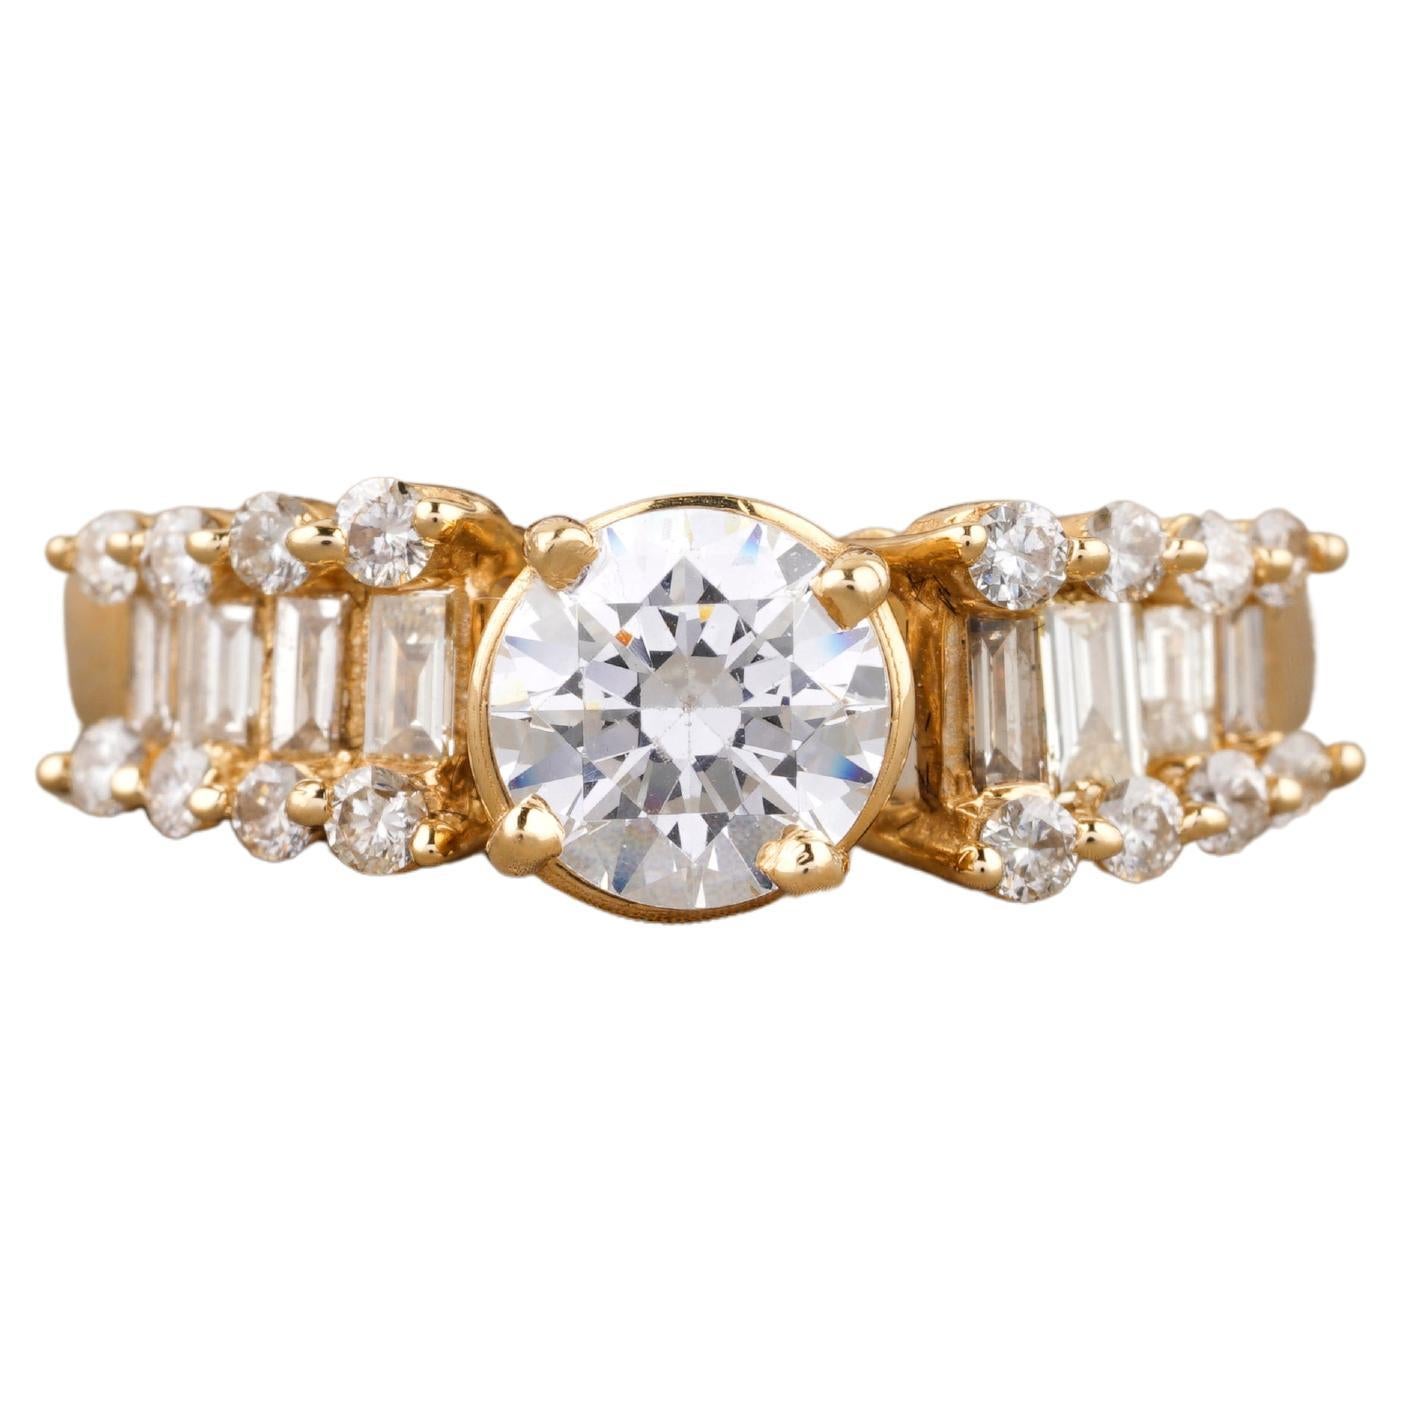 Bague solitaire en or massif 18 carats avec diamants ronds et baguettes de 1,5 carat